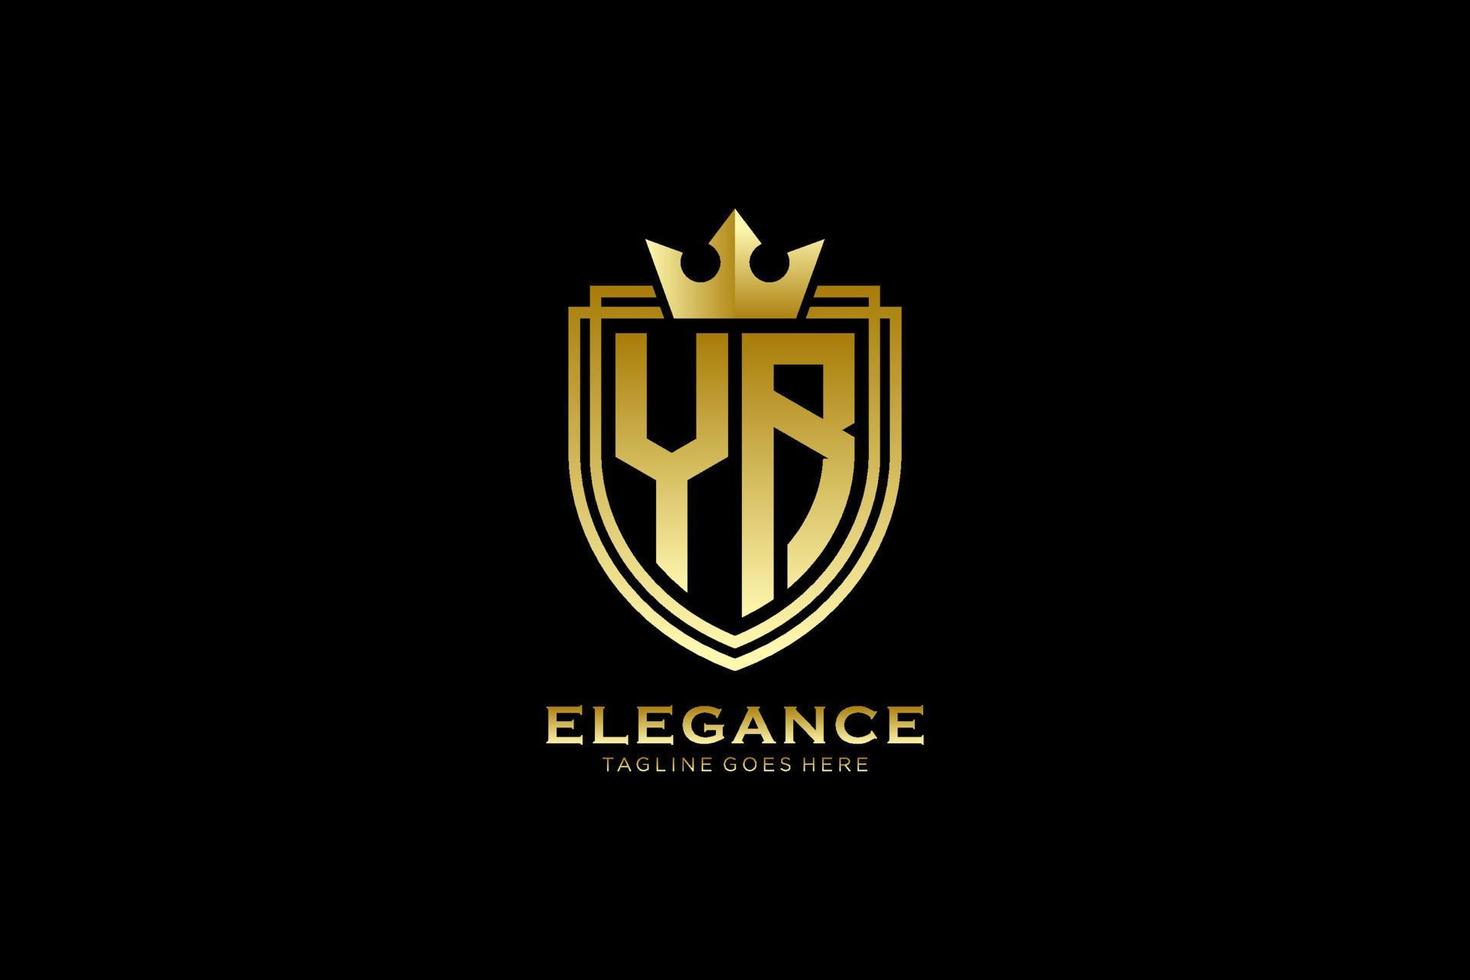 logo monogramme de luxe élégant de l'année initiale ou modèle de badge avec volutes et couronne royale - parfait pour les projets de marque de luxe vecteur